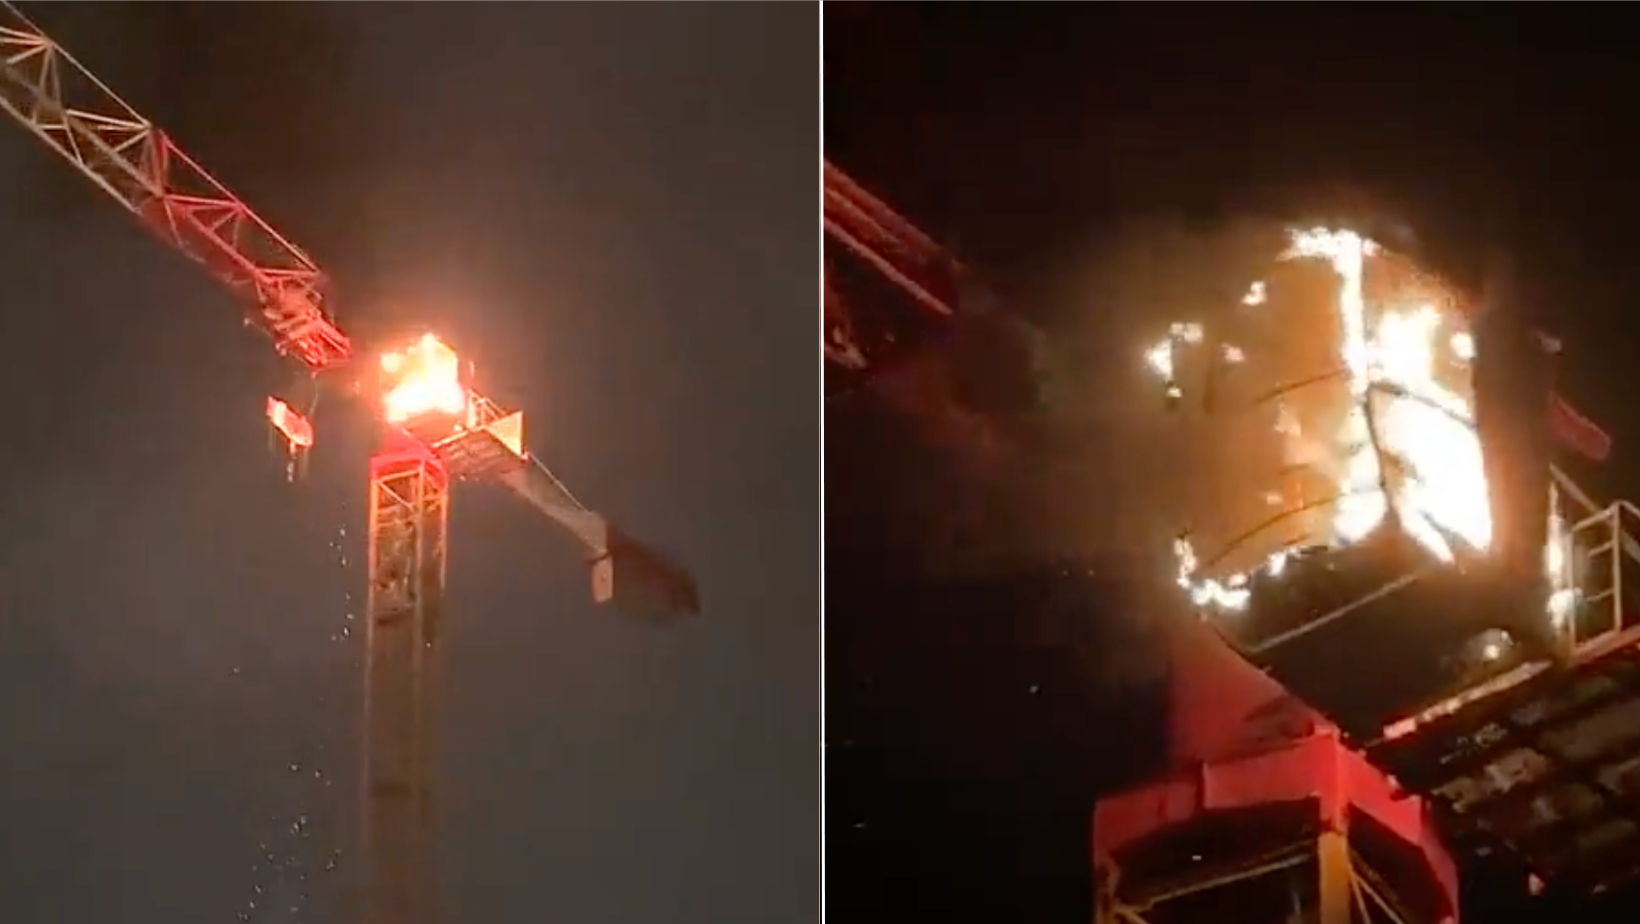 [VIDEO] El impactante registro de una grúa en llamas muestra el caos de las protestas en Francia